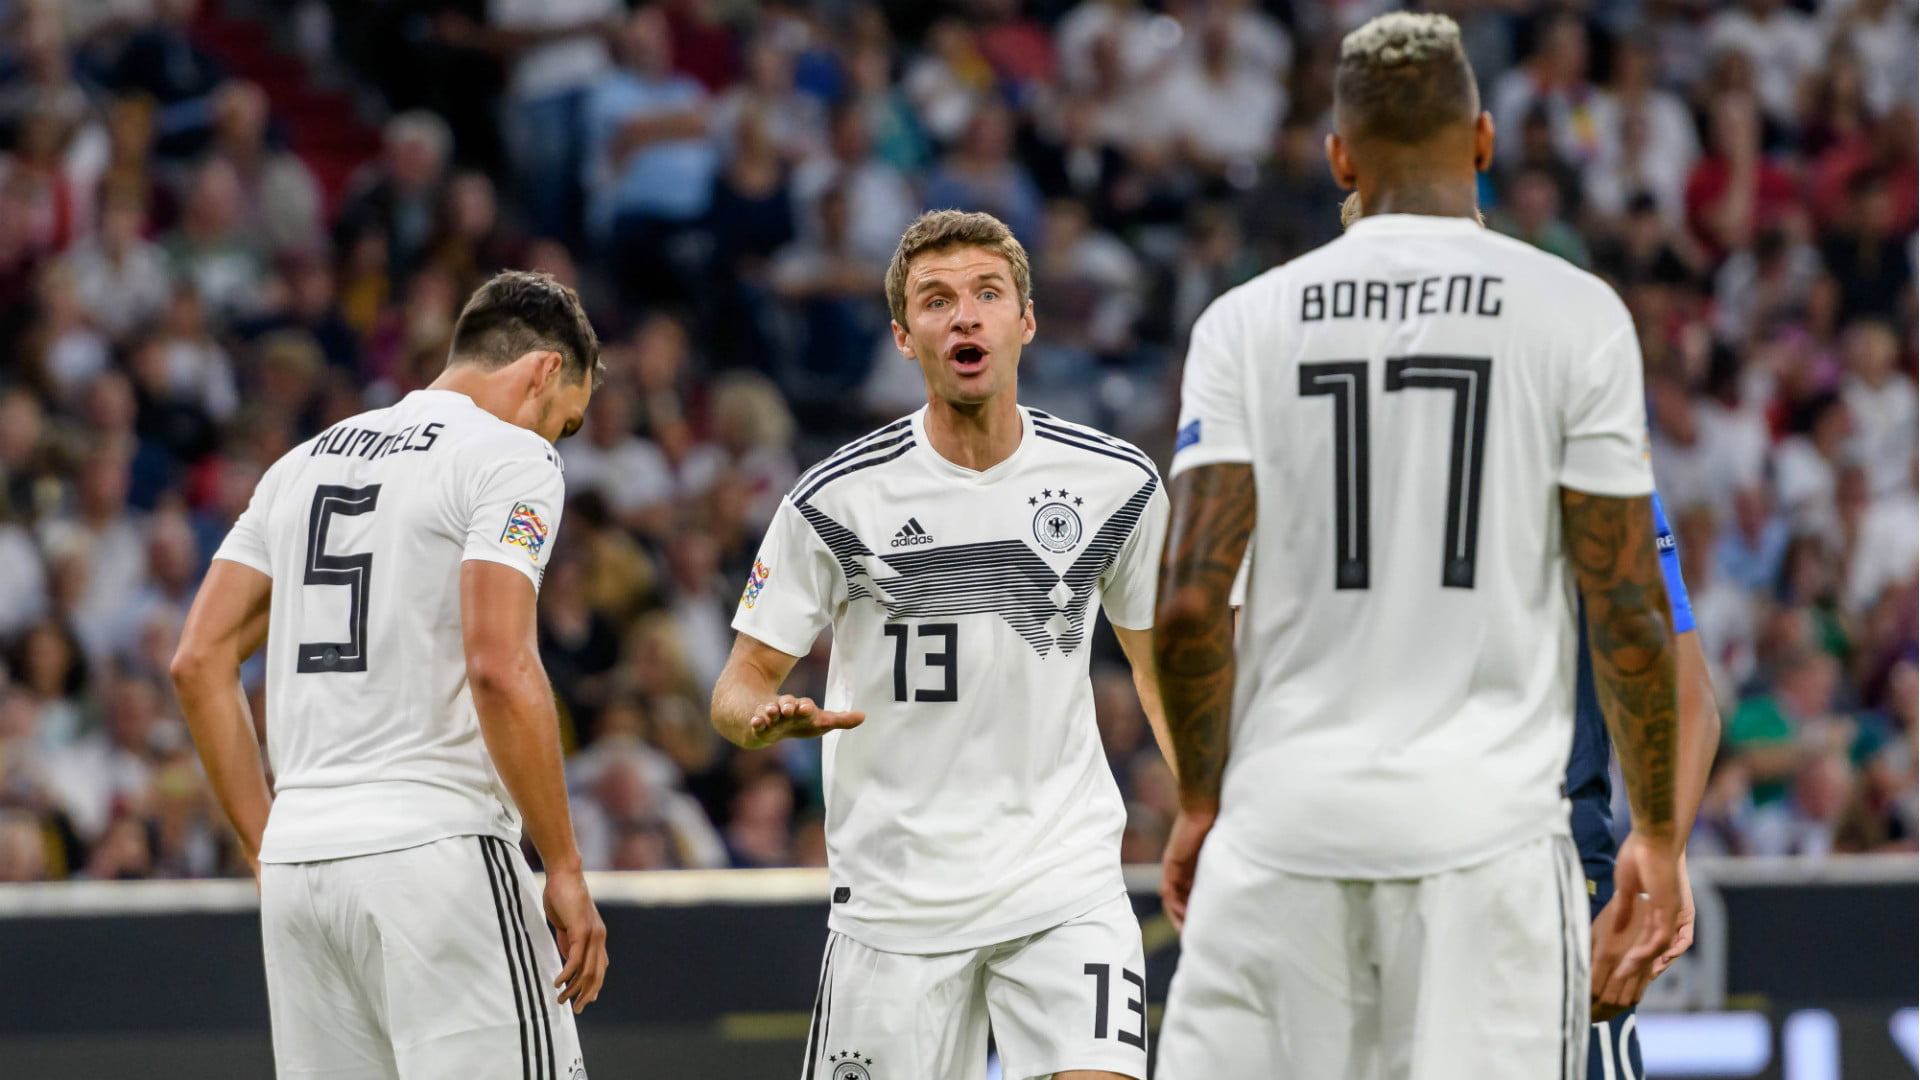 موعد مباراة ألمانيا وصربيا الودية القنوات الناقلة للمباراة والتشكيل المتوقع للفريقين